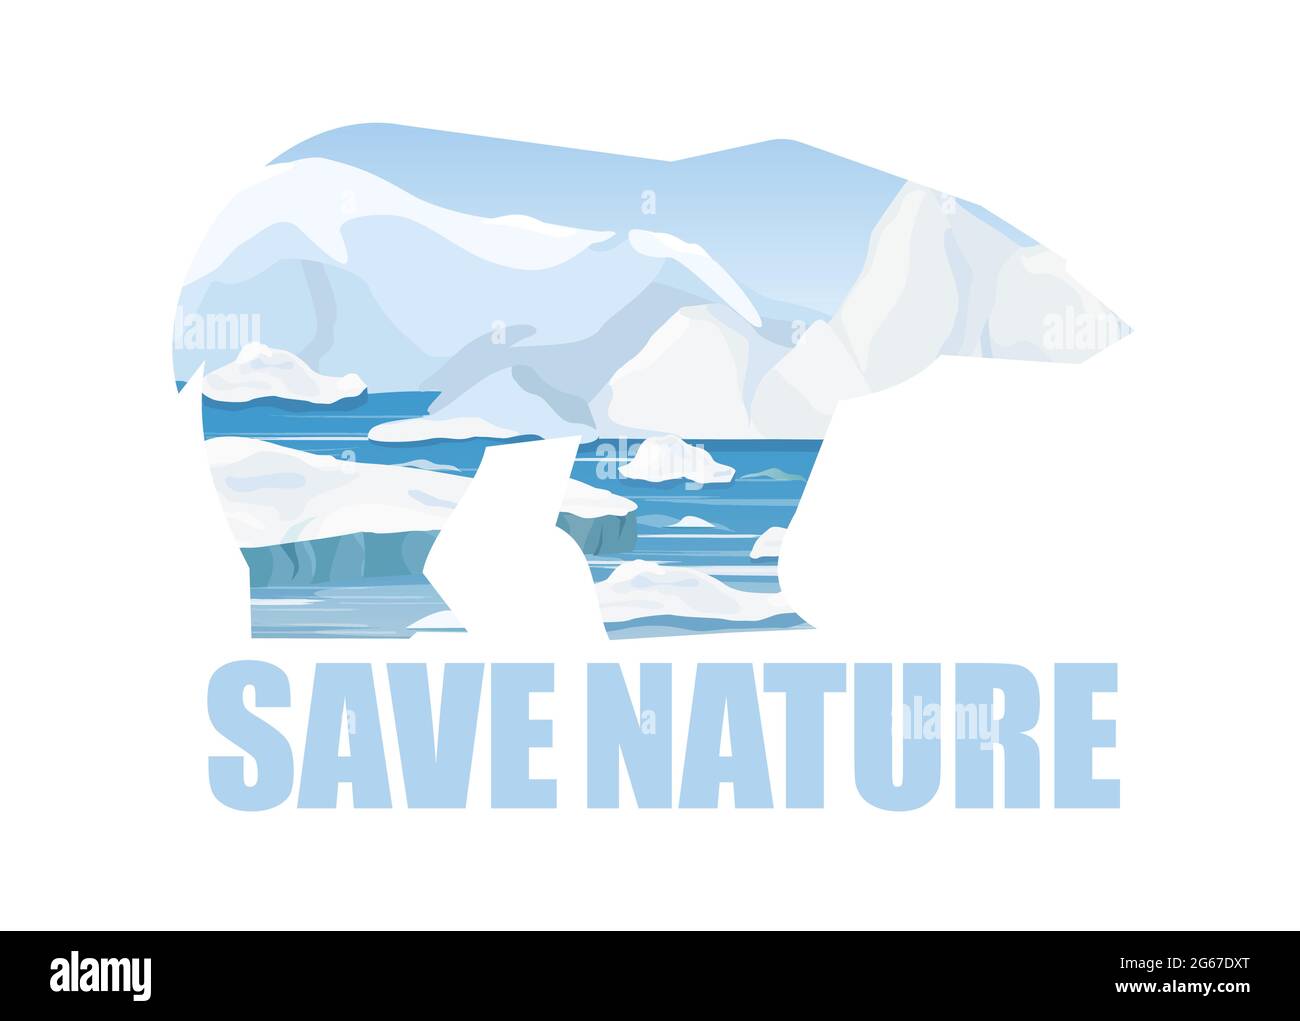 Illustration vectorielle concept de sauvegarde de la nature Arctick. Silhouette d'ours arctique et arrière-plan du paysage arctique avec texte Save nature. Style dessin animé plat Illustration de Vecteur